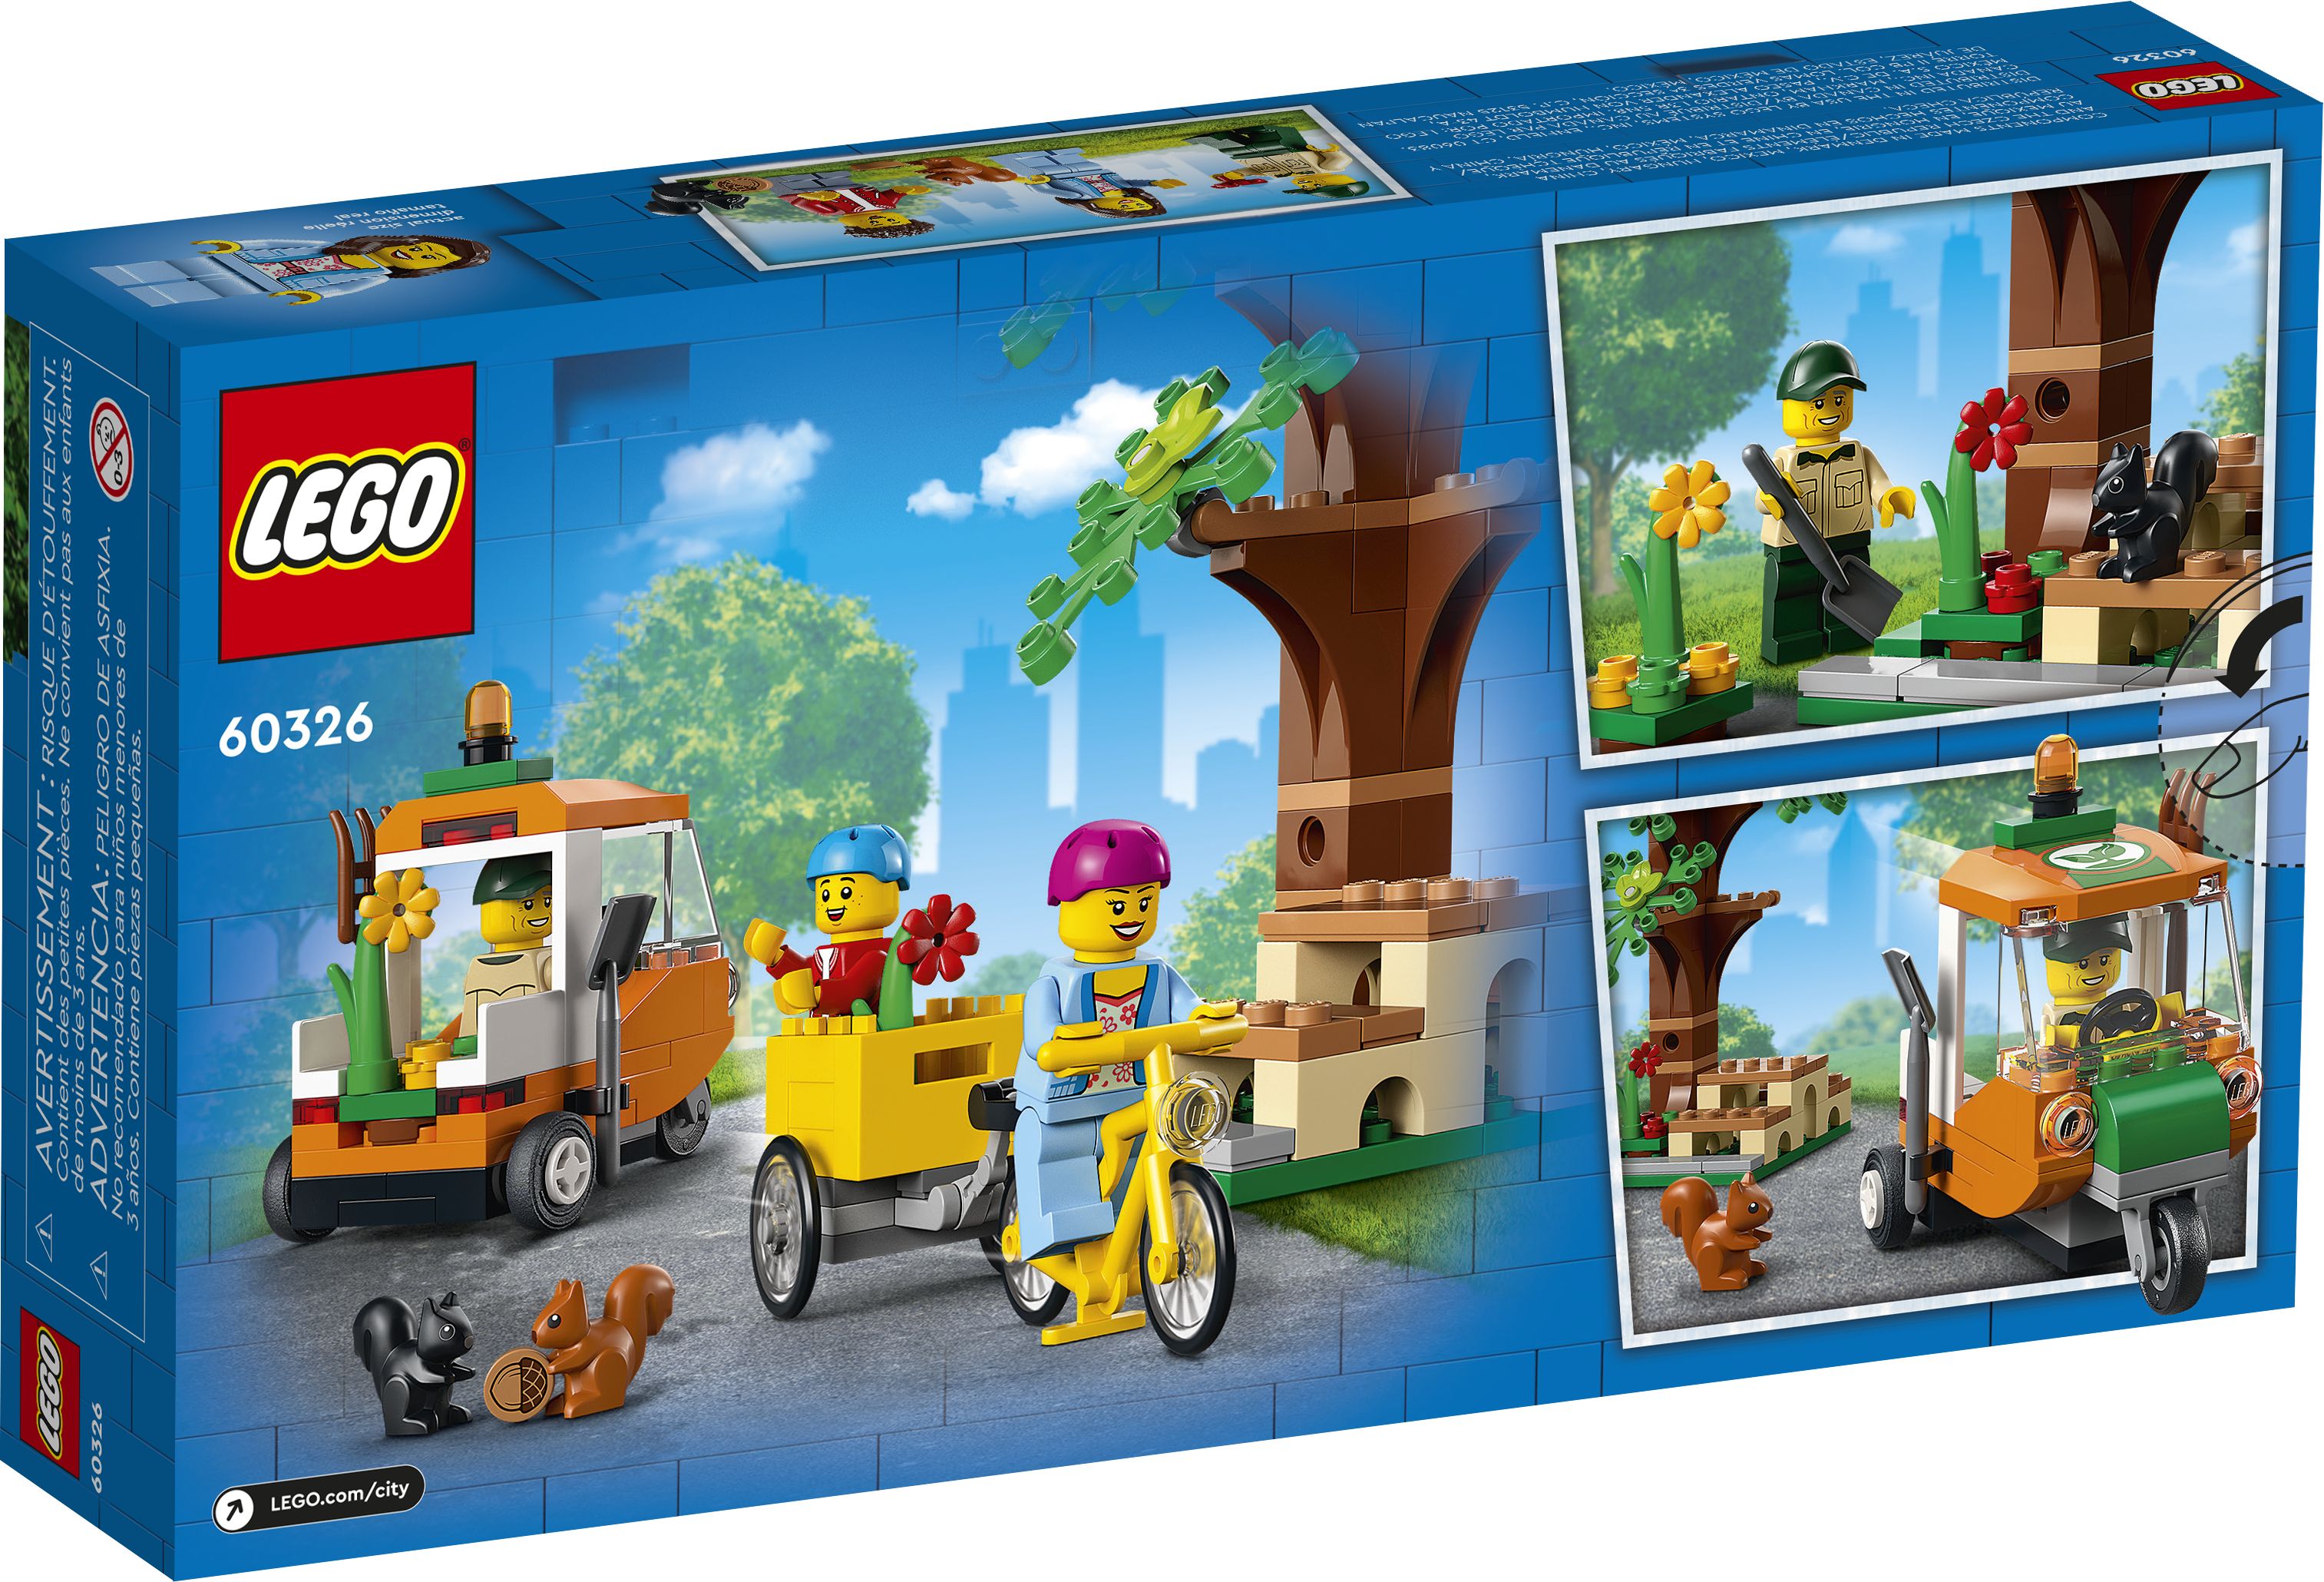 LEGO City 60326 Picknick im Park LEGO_60326_Box5_v39.jpg